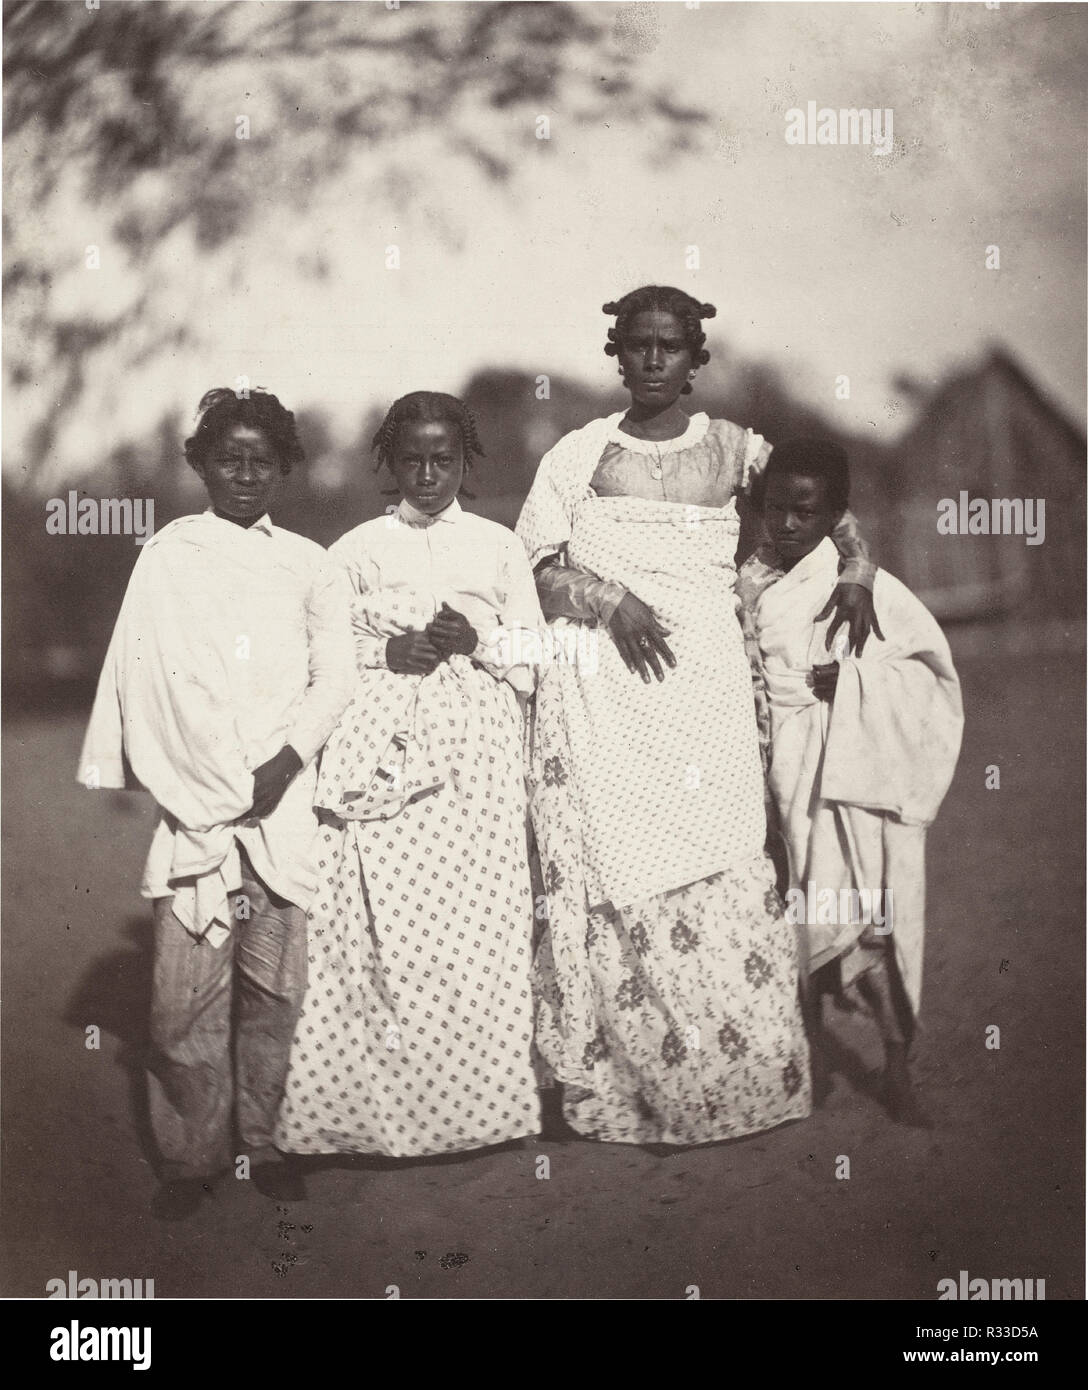 Femme Malgache et ses enfants (femme malgache et ses enfants) (photo 3). En date du : 1863. Dimensions : image : 21 x 17,6 cm (8 1/4 x 6 15/16 in.) : 42,6 x 29,9 Fiche cm (16 3/4 x 11 3/4 in.). Médium : épreuve à l'albumine. Musée : National Gallery of Art, Washington DC. Auteur : Désiré Charnay. Banque D'Images